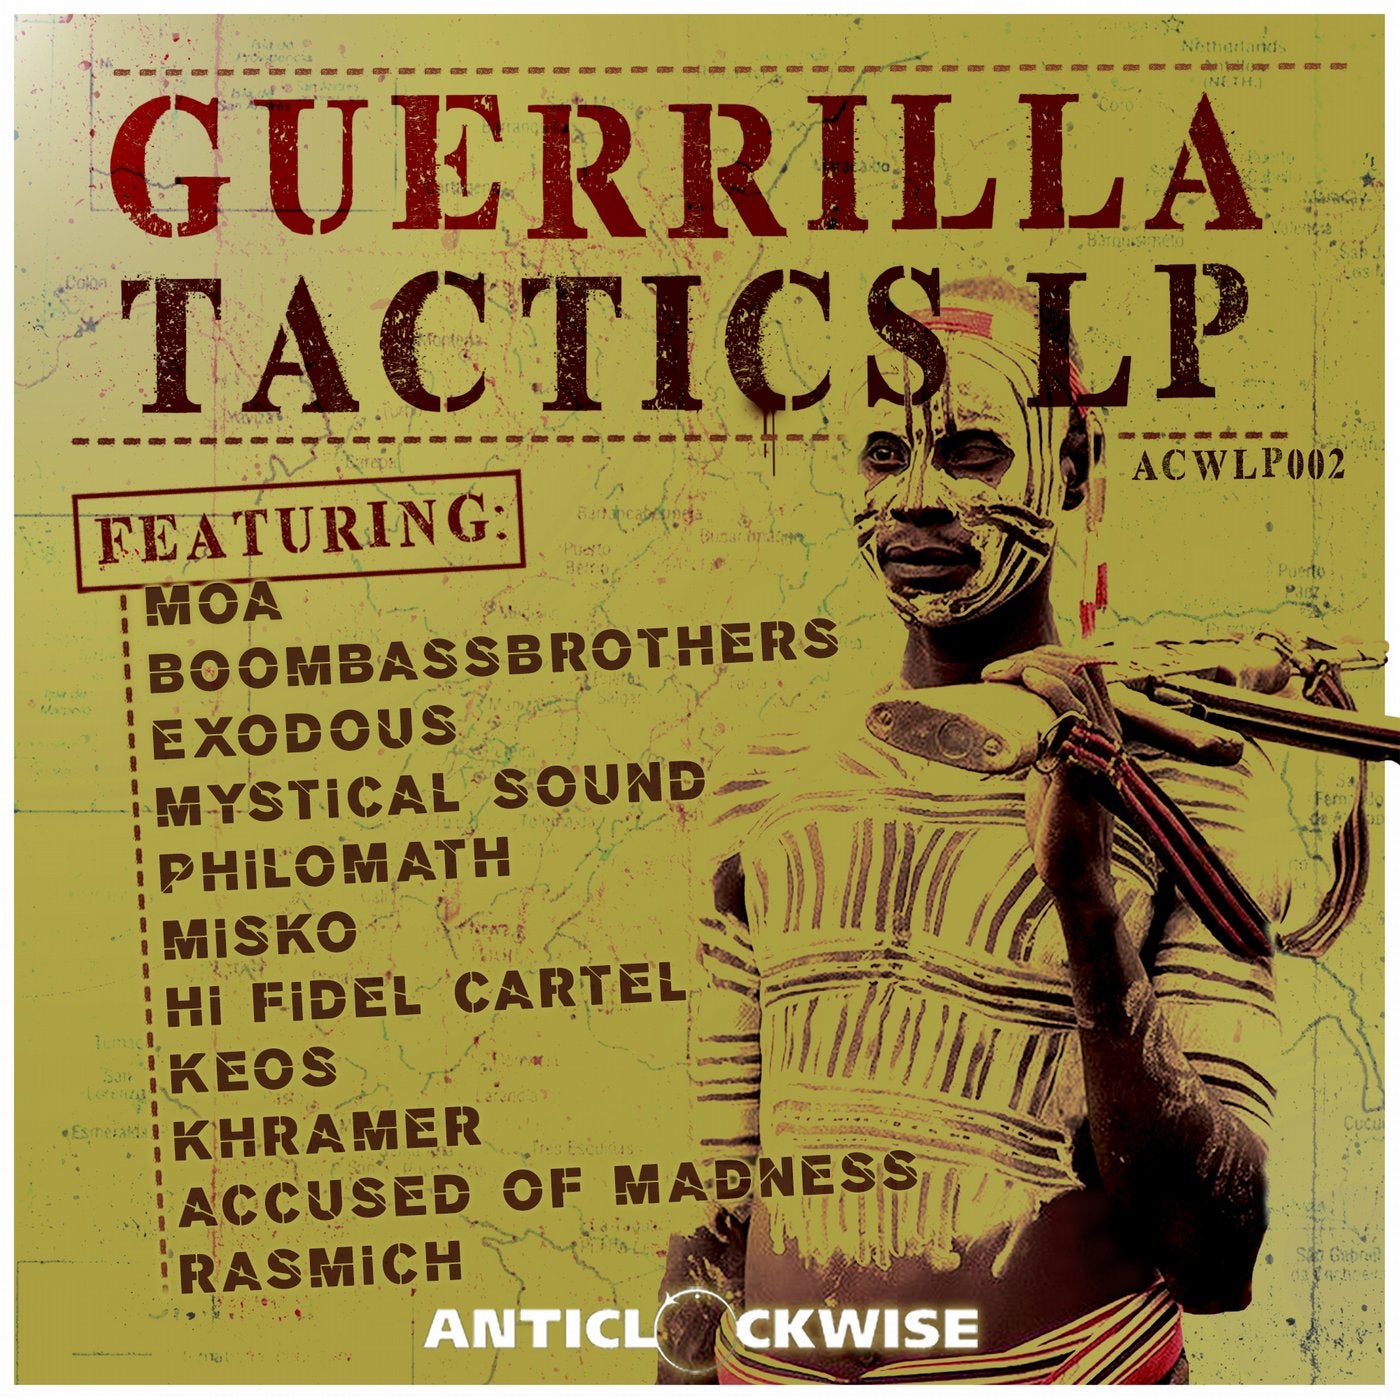 Guerrilla Tactics LP